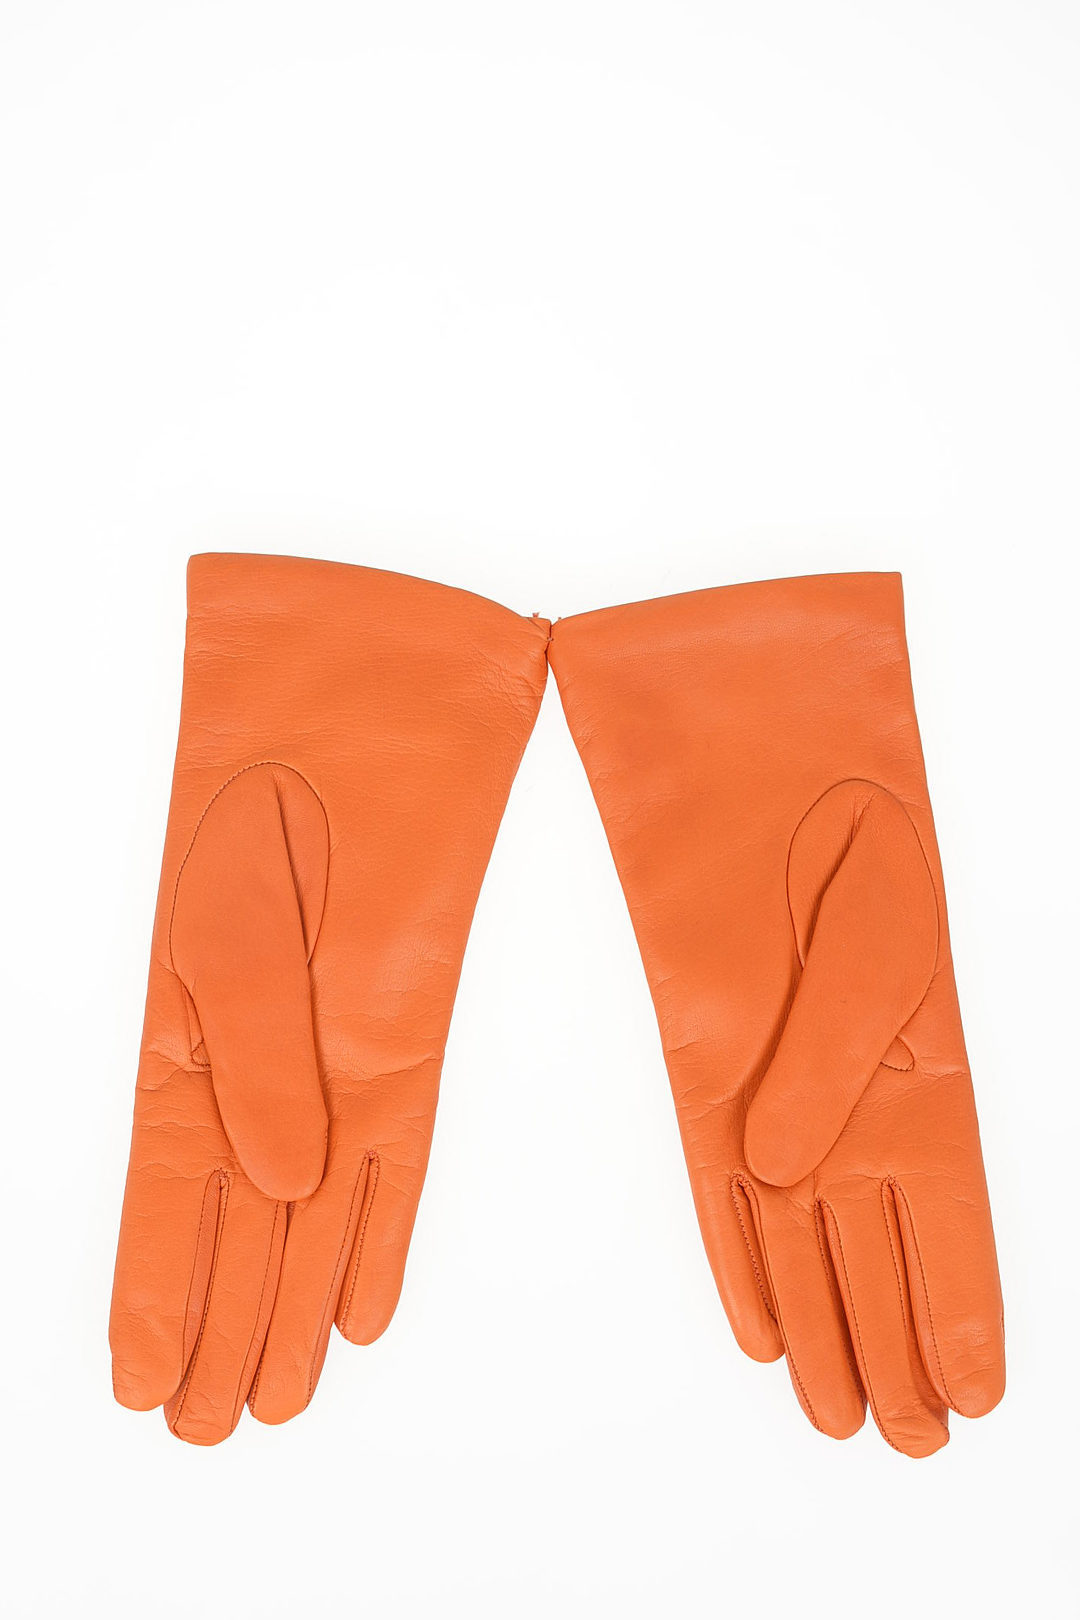 Sermoneta Gloves Leather Winter Gloves - Neutrals Winter Accessories,  Accessories - WSY20394